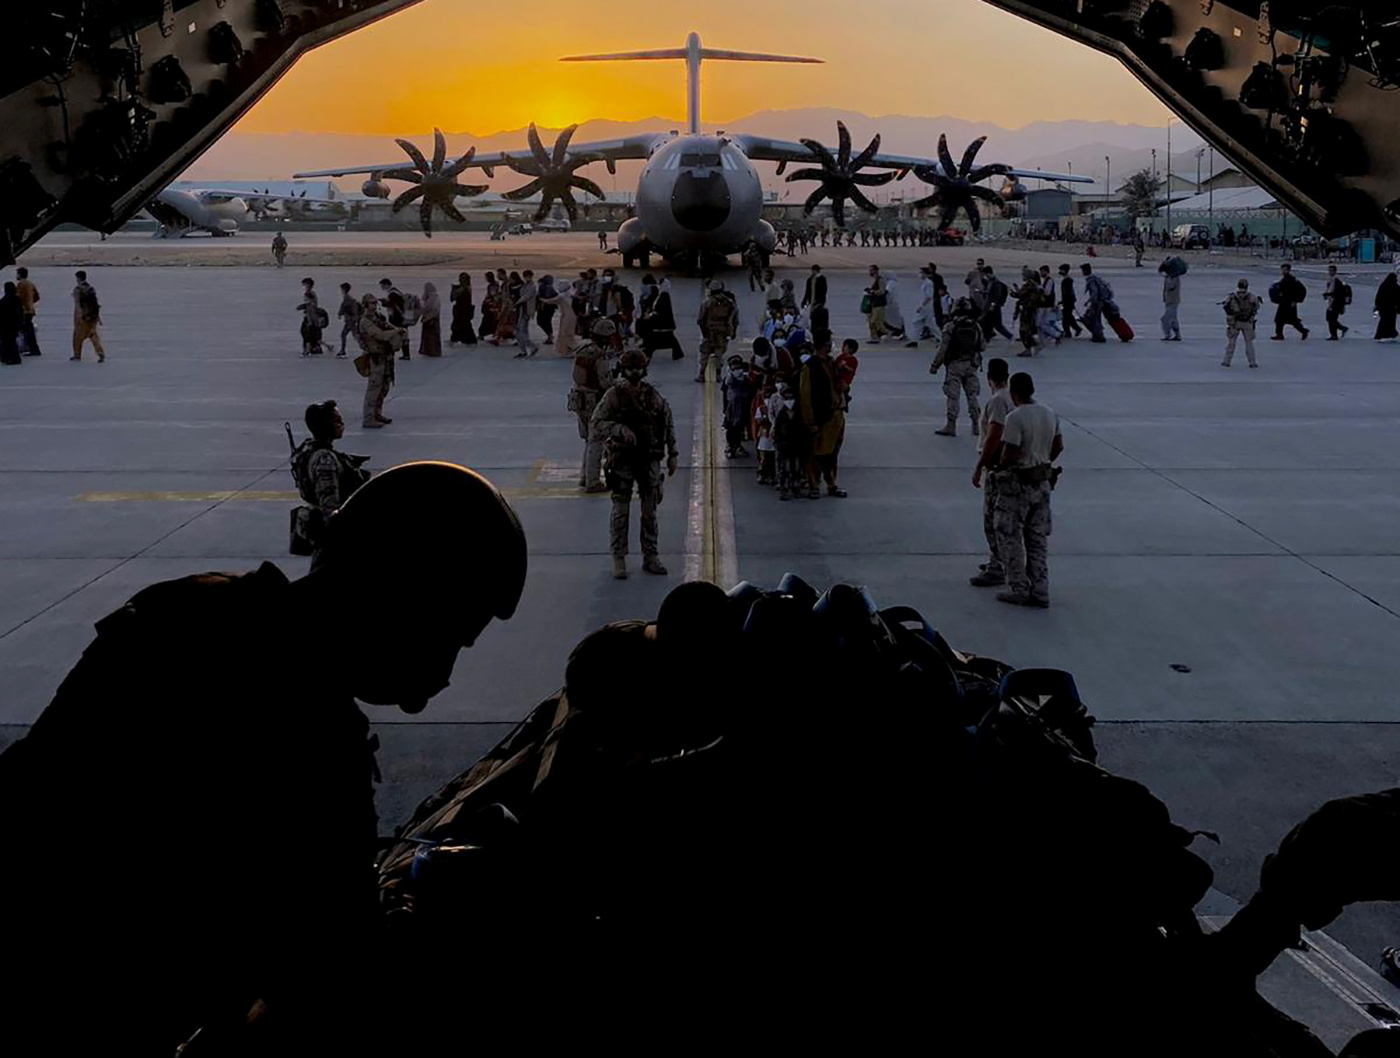 Spain ends Afghan evacuation